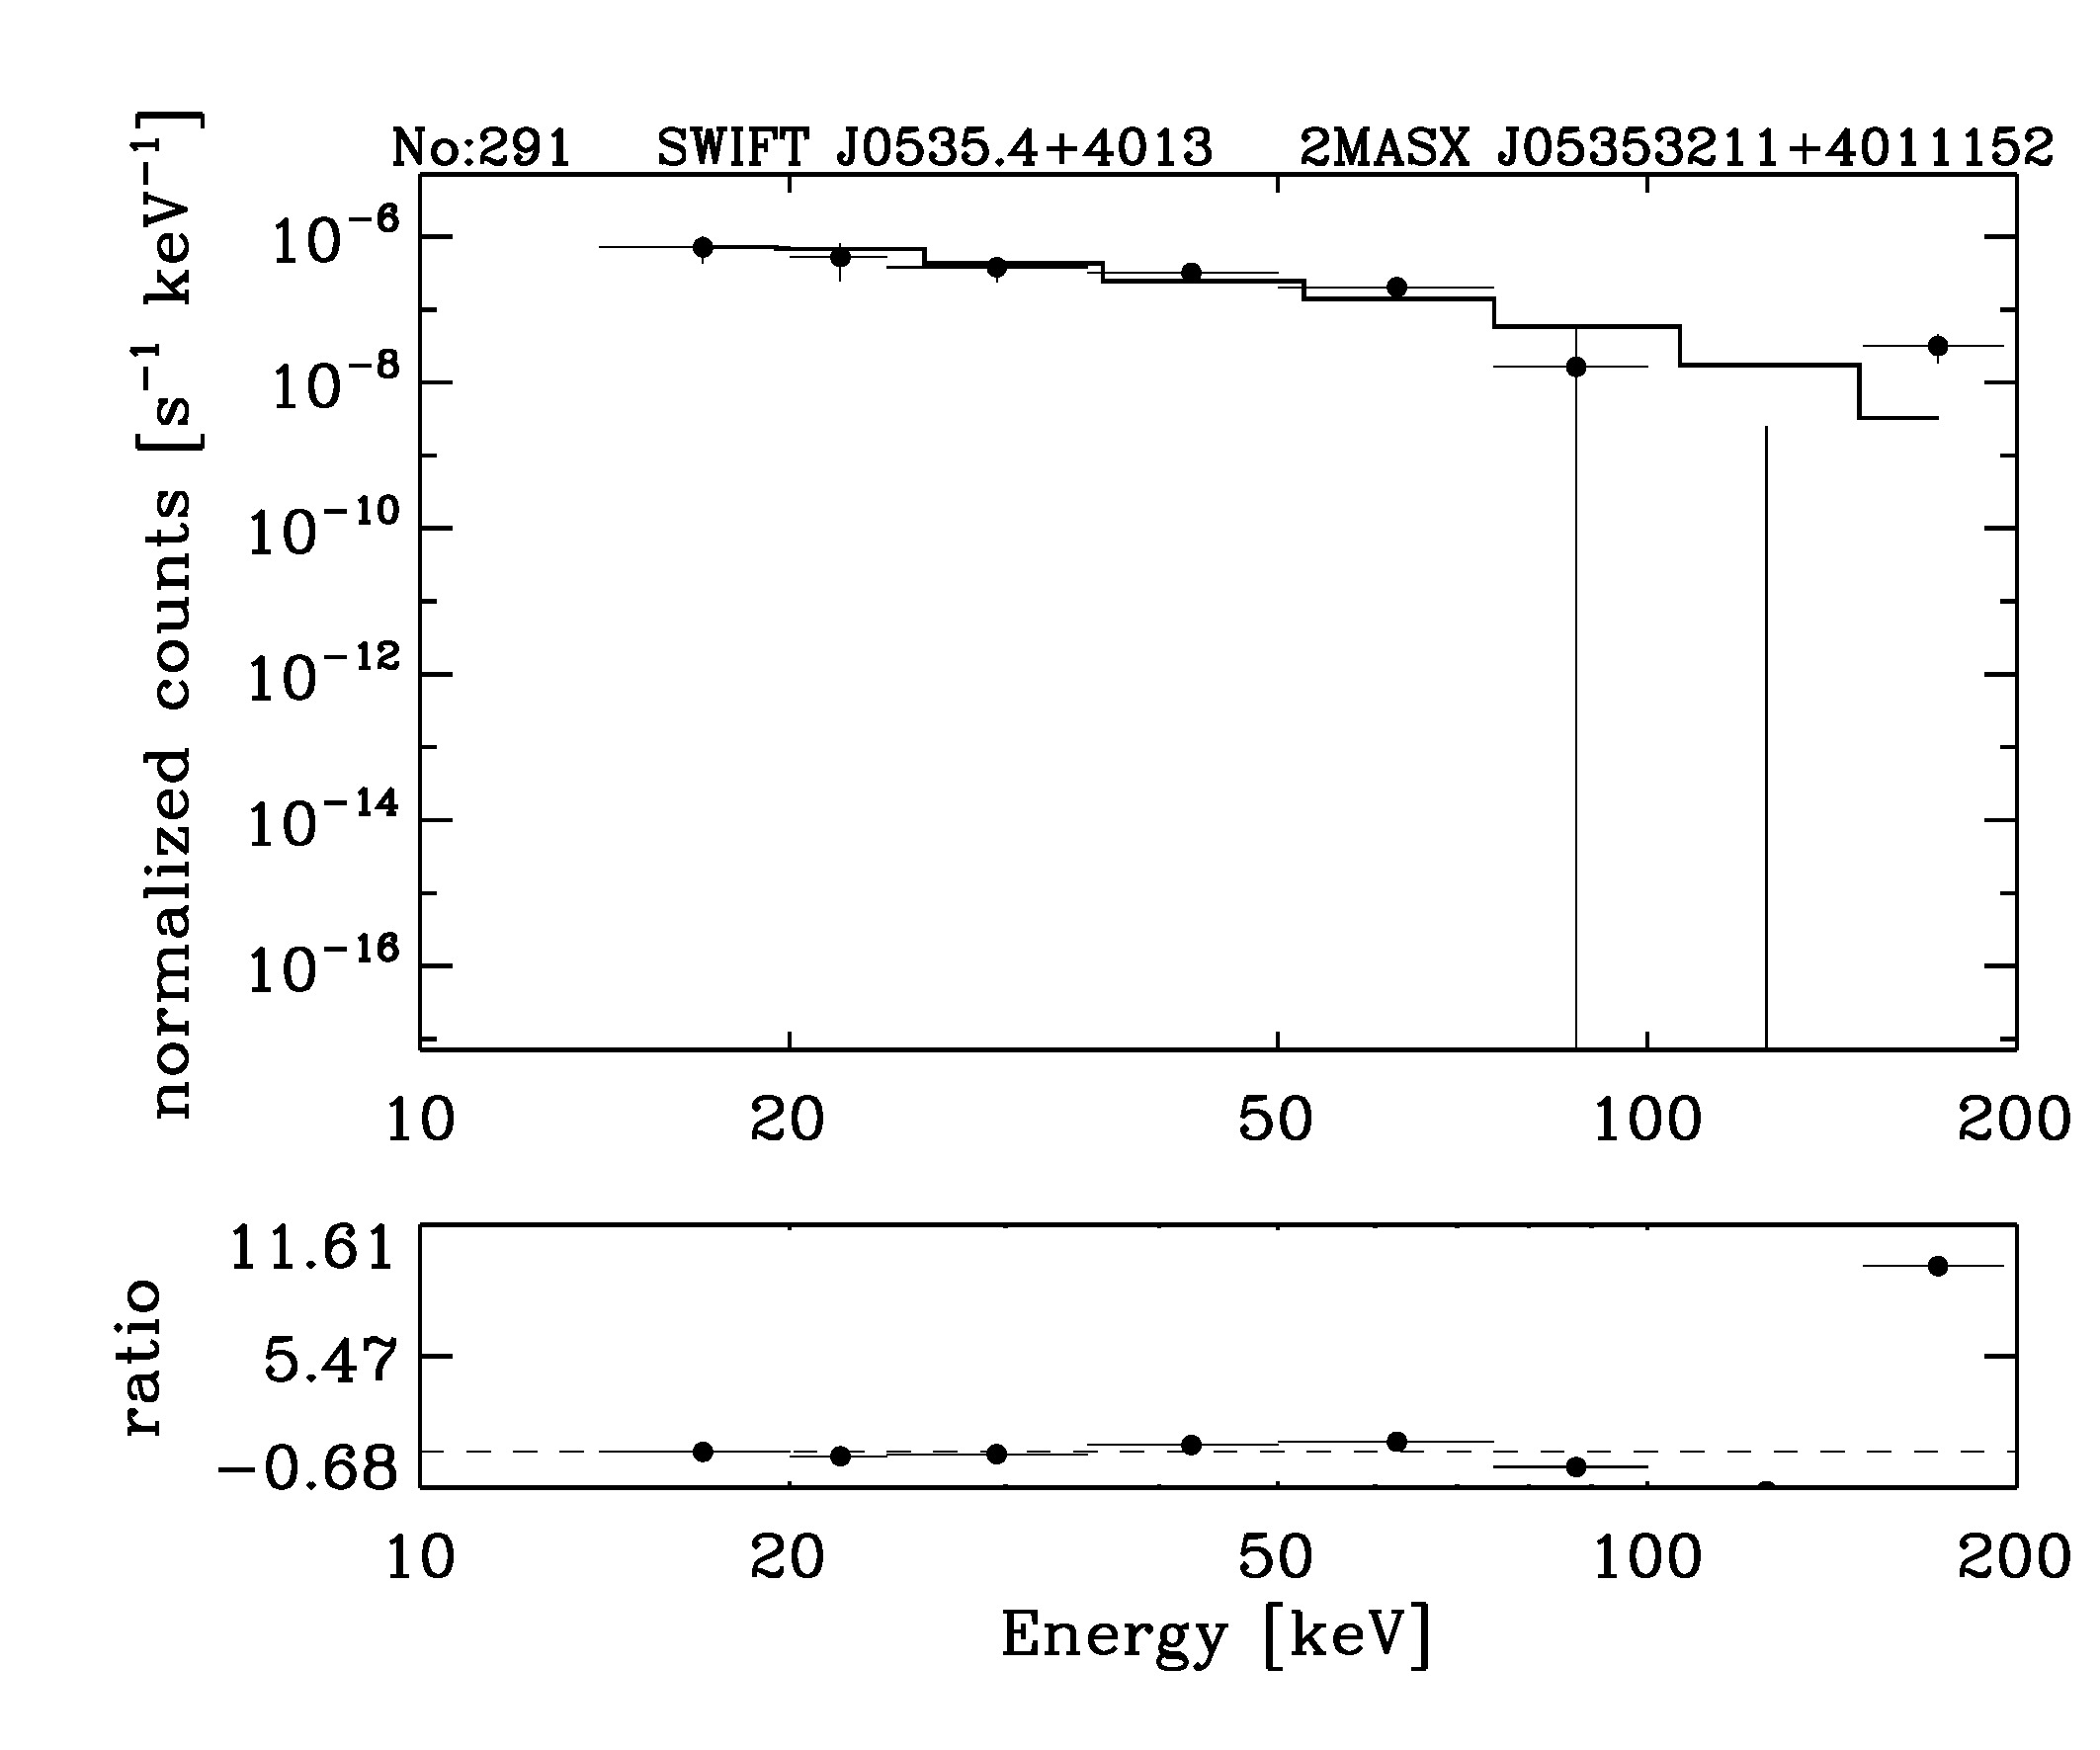 BAT Spectrum for SWIFT J0535.4+4013